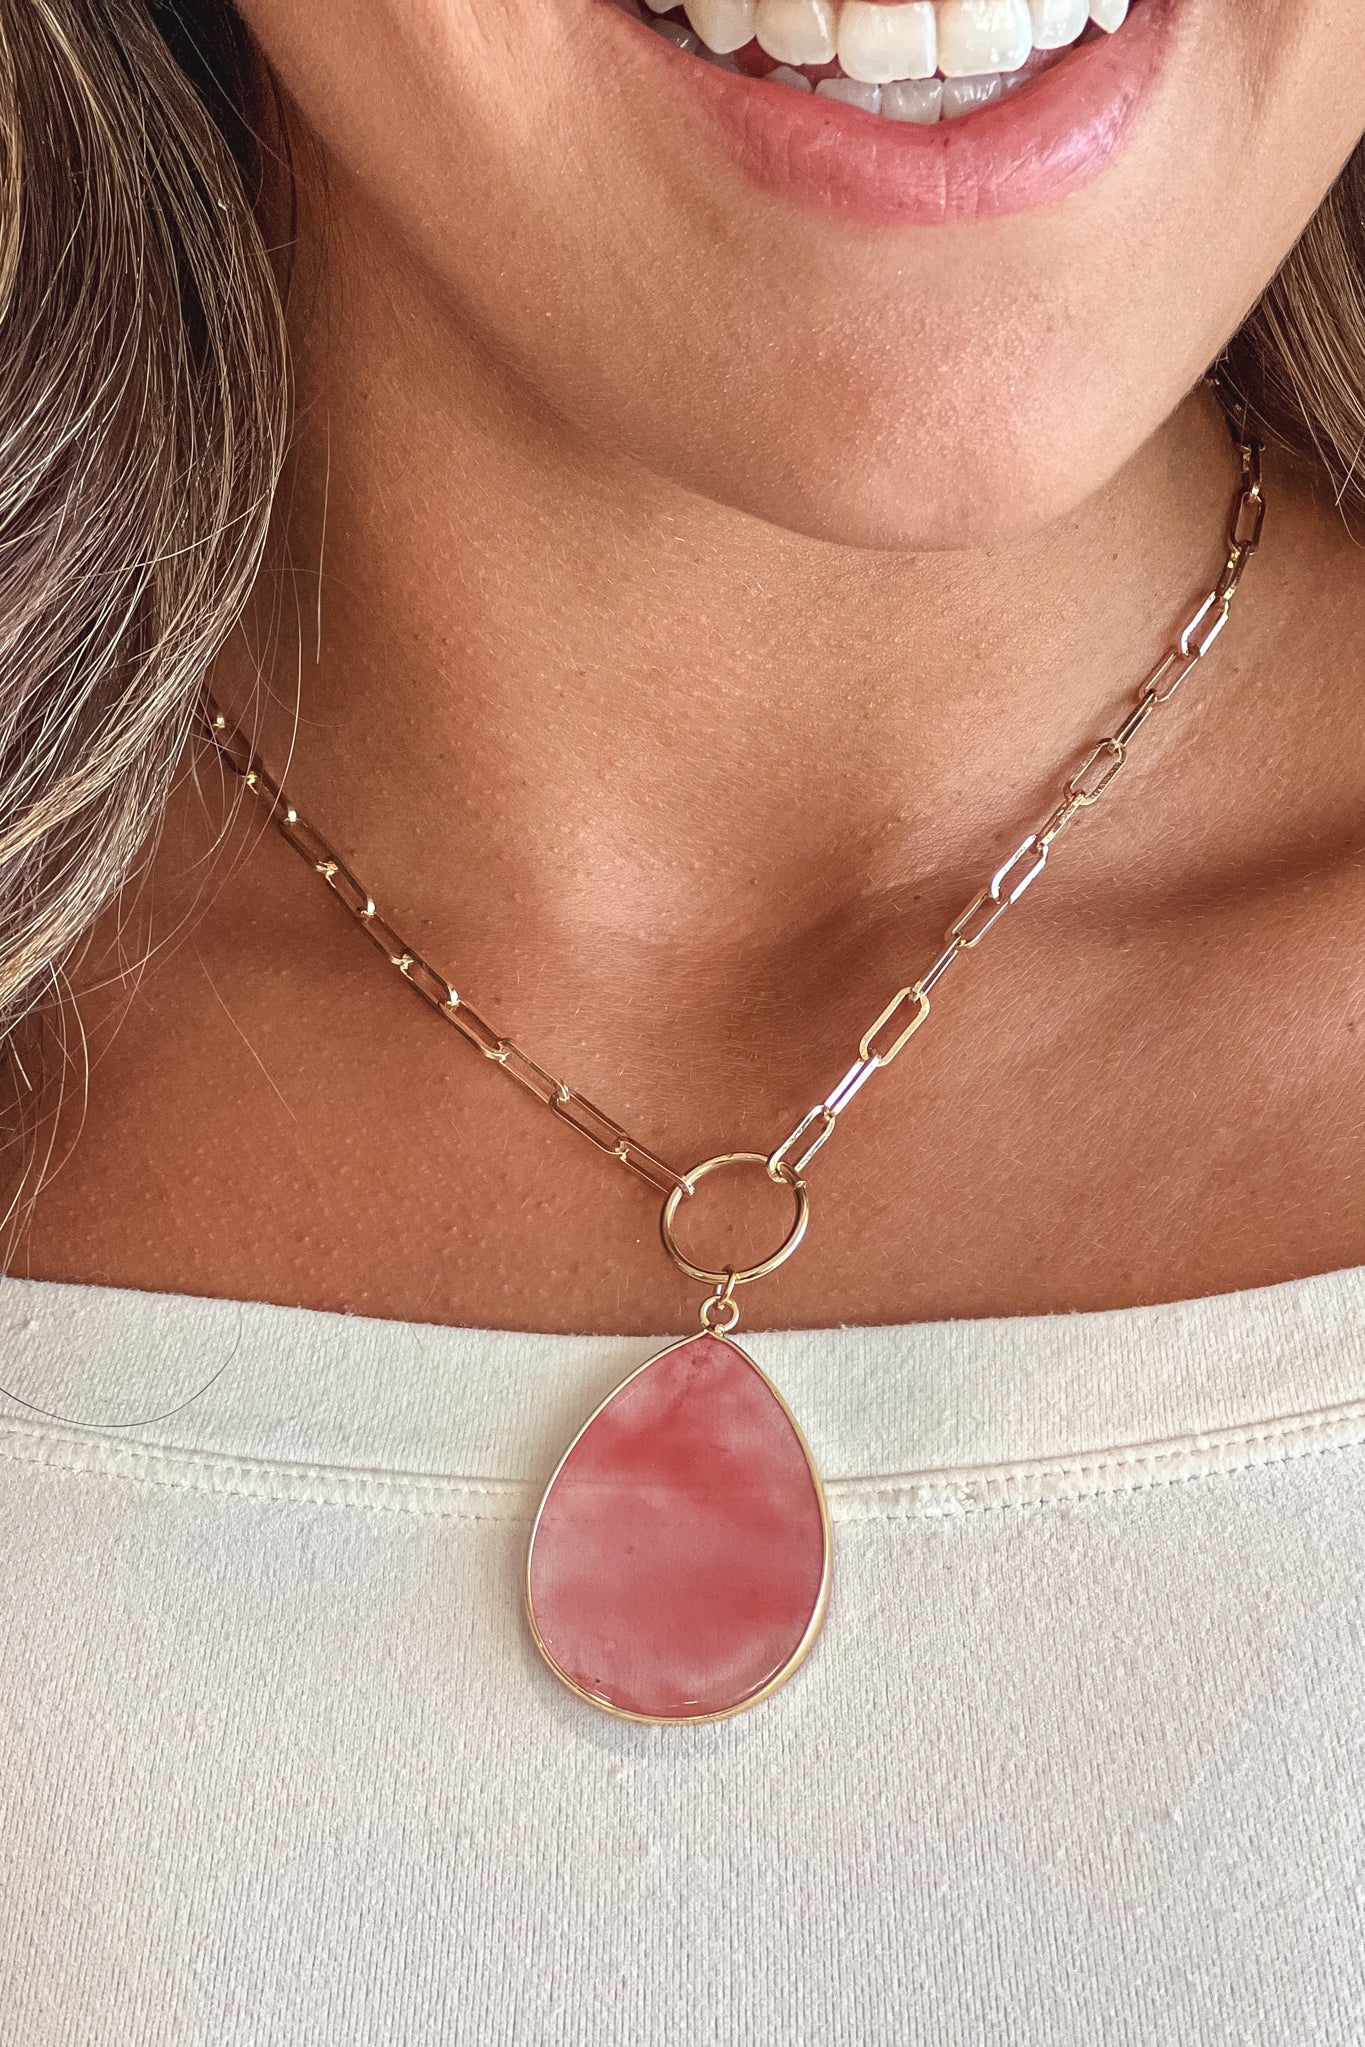 red quartz pendant necklace